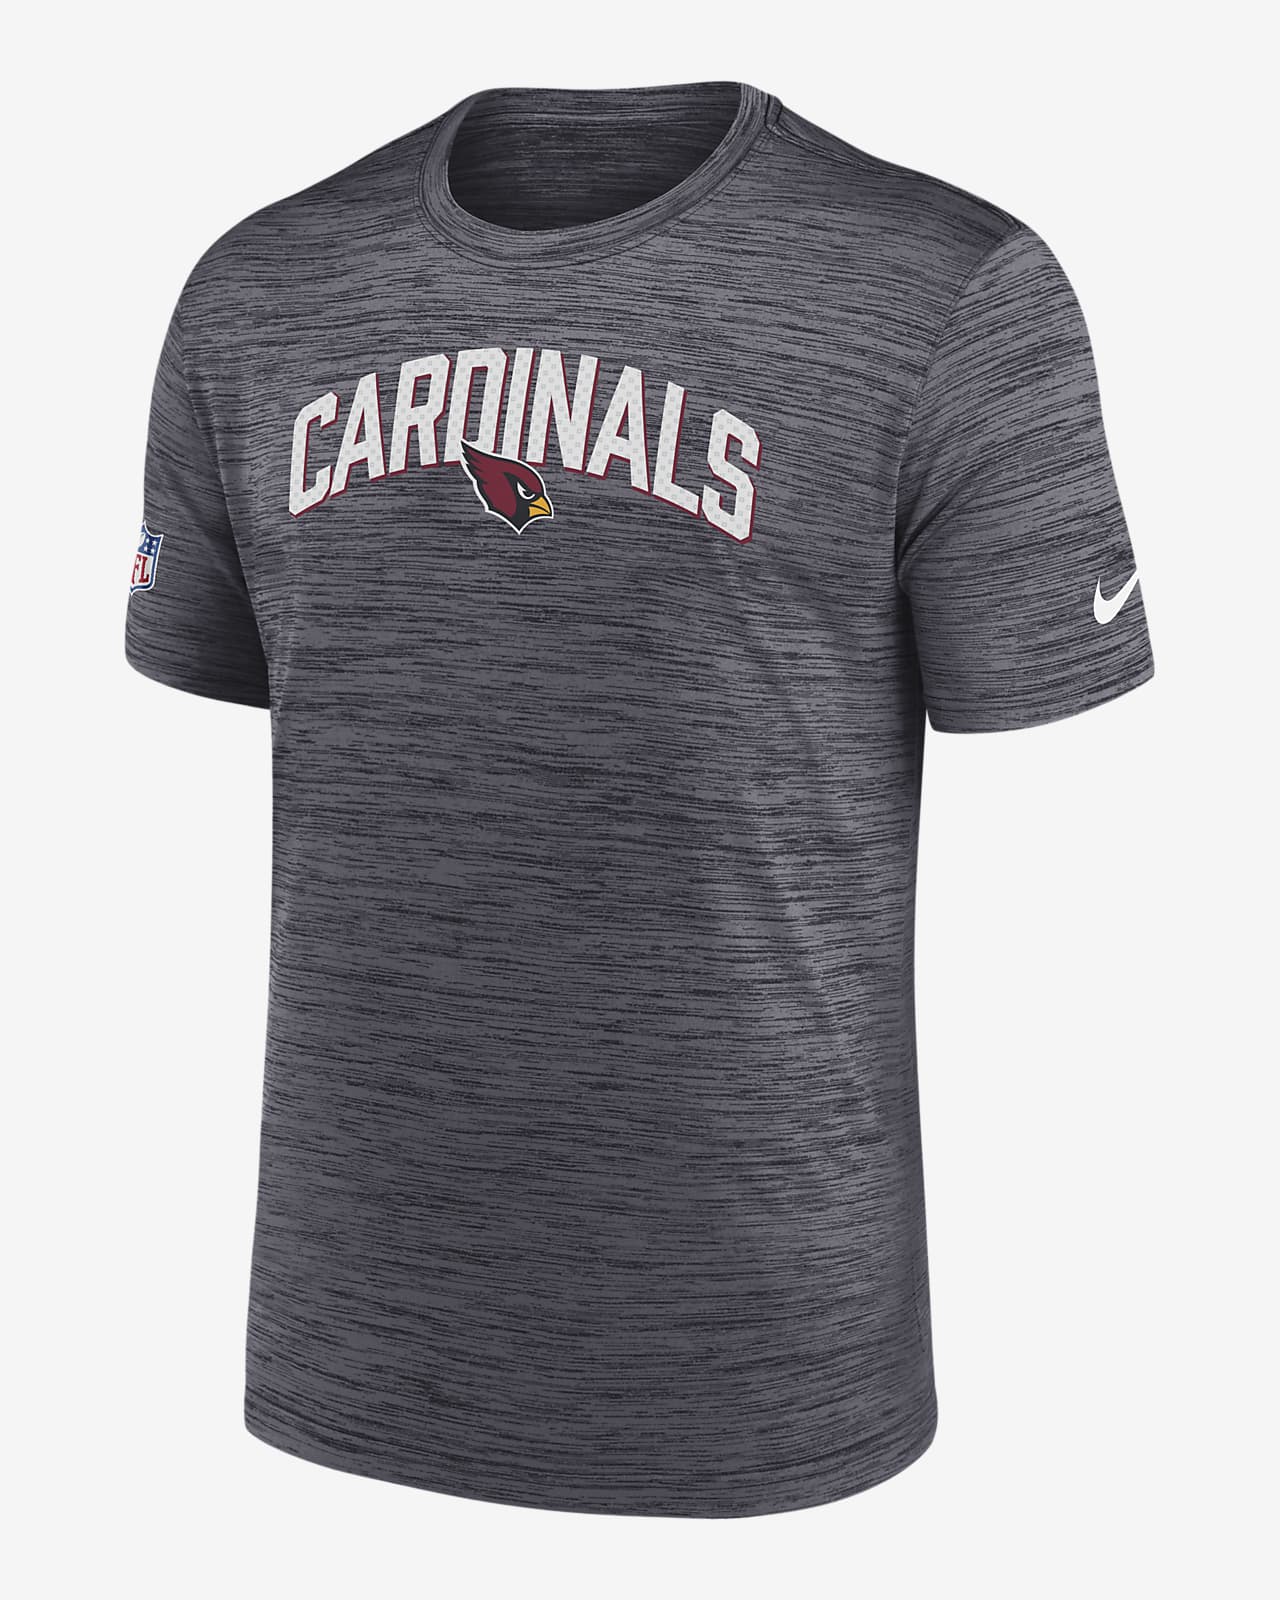 arizona cardinals men's t shirt